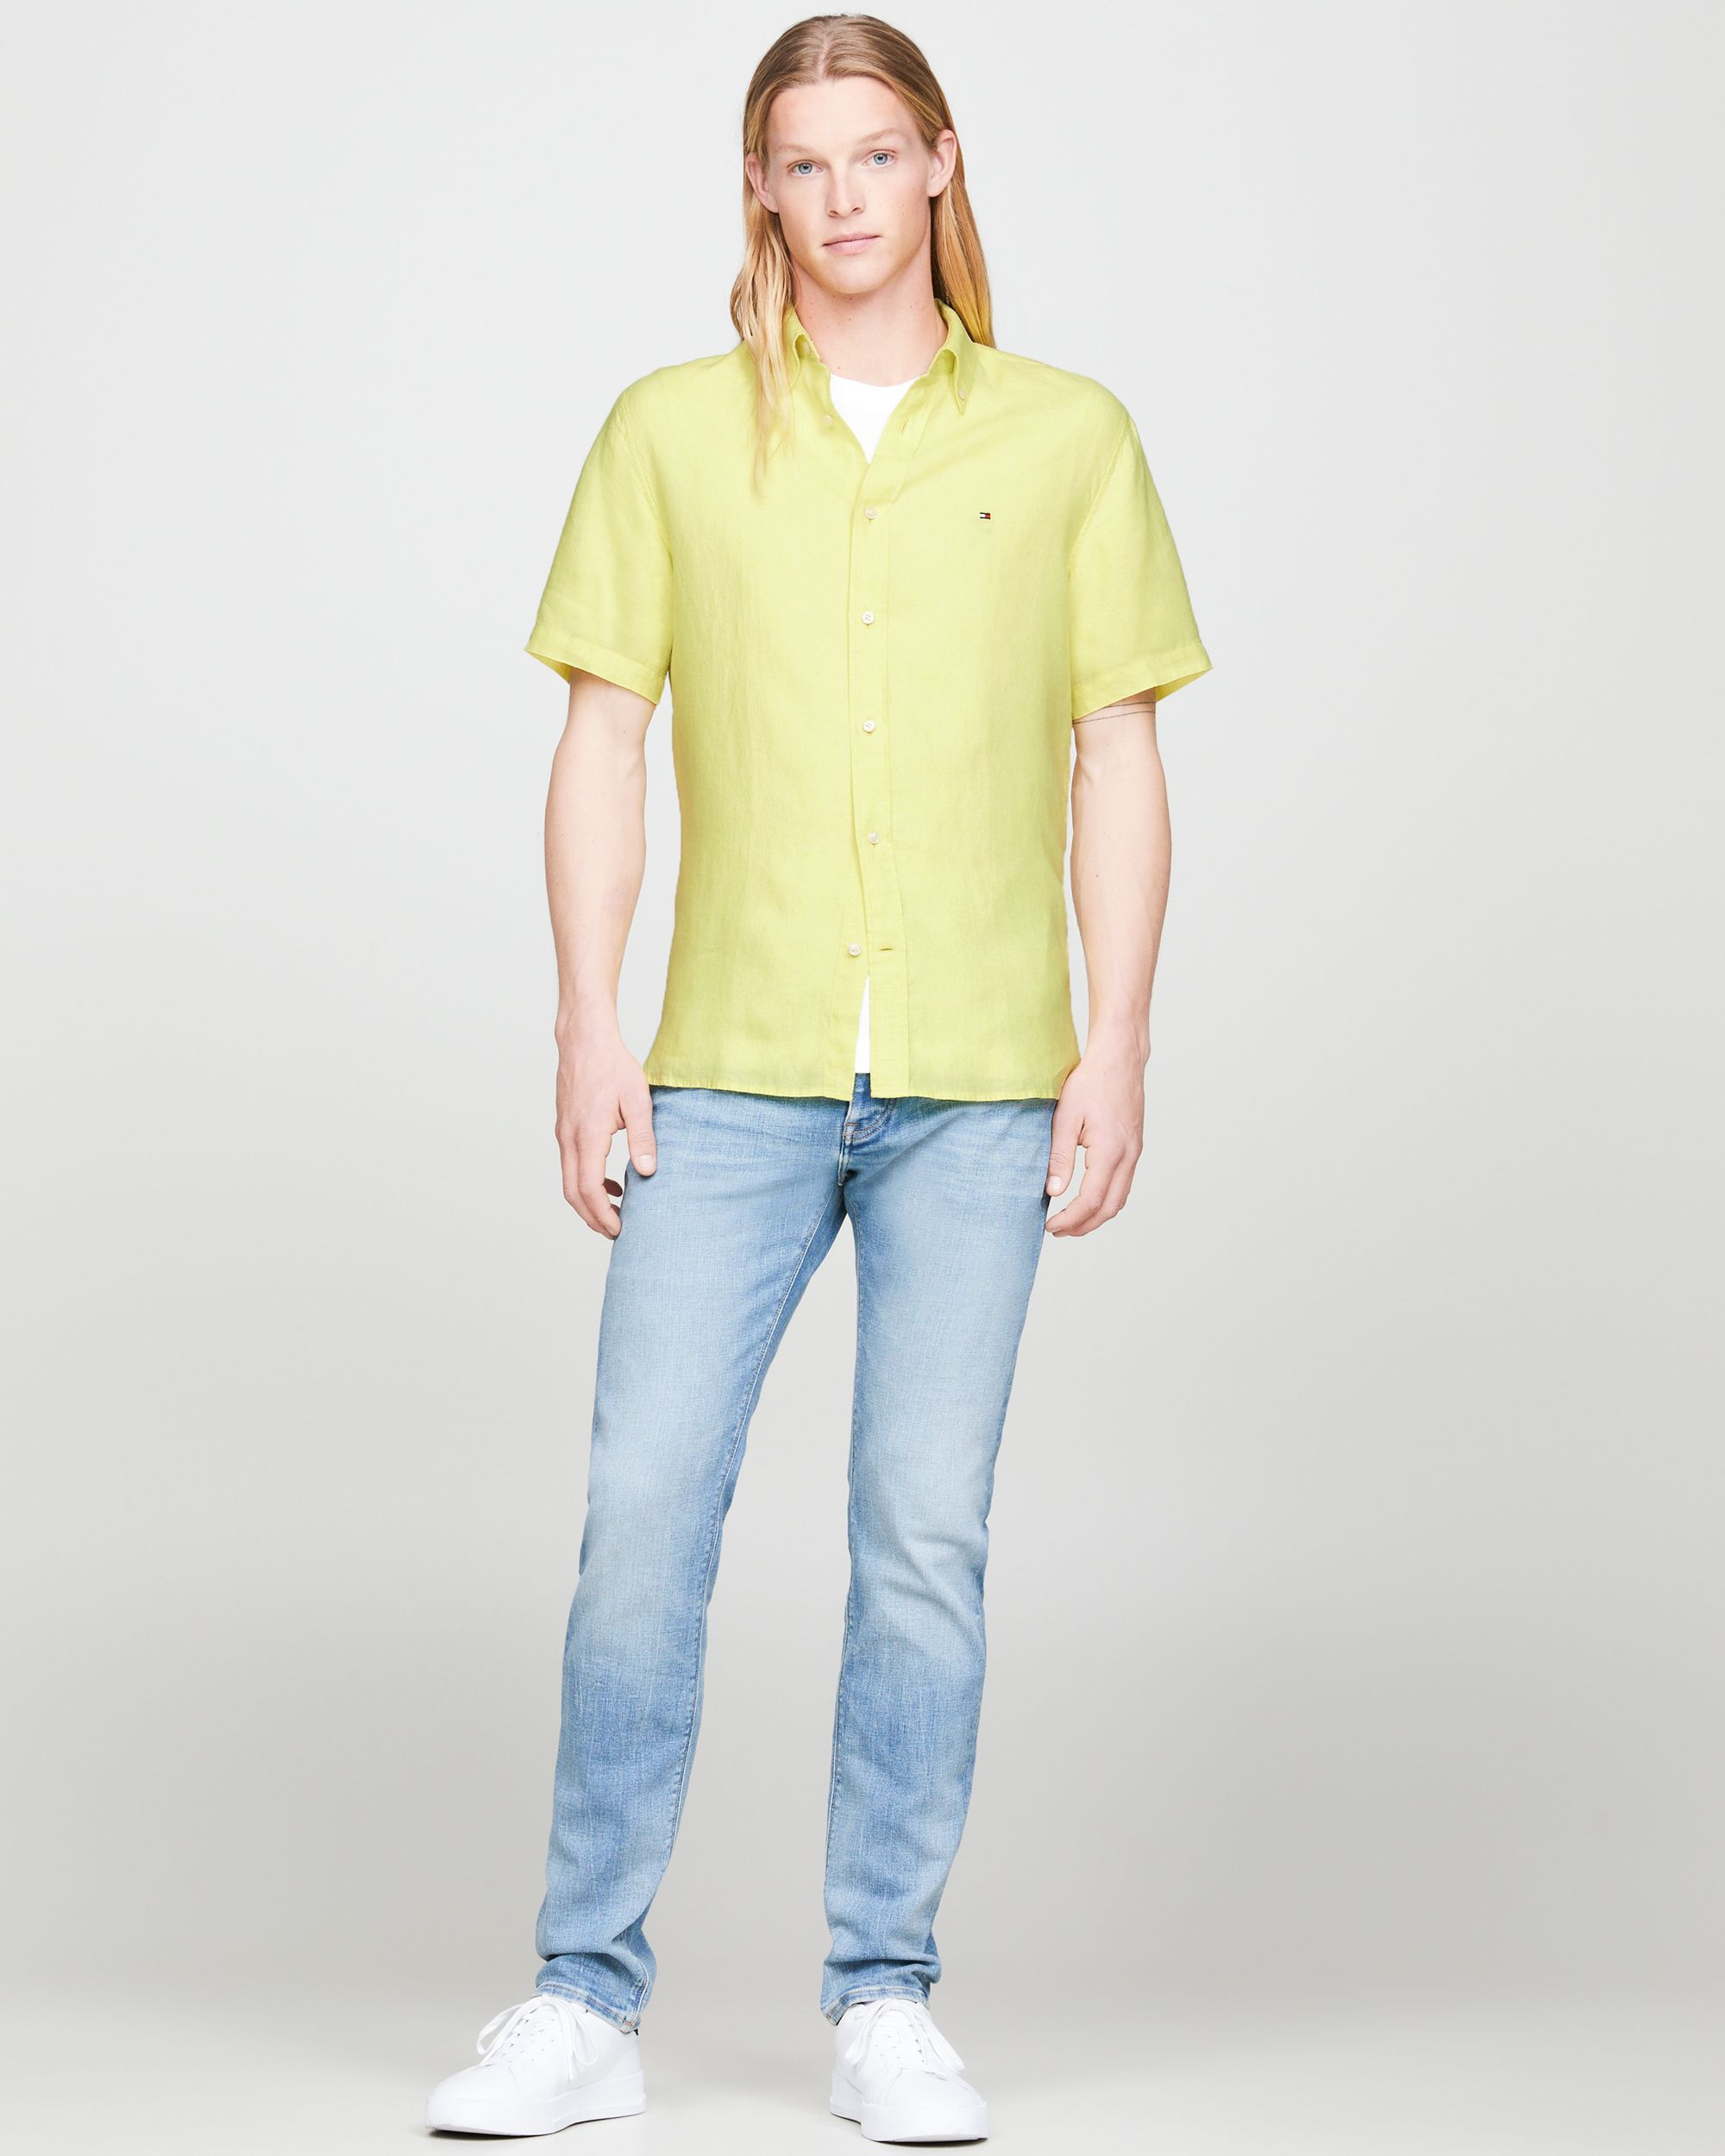 Tommy Hilfiger Menswear Casual Overhemd KM Geel 094685-001-L